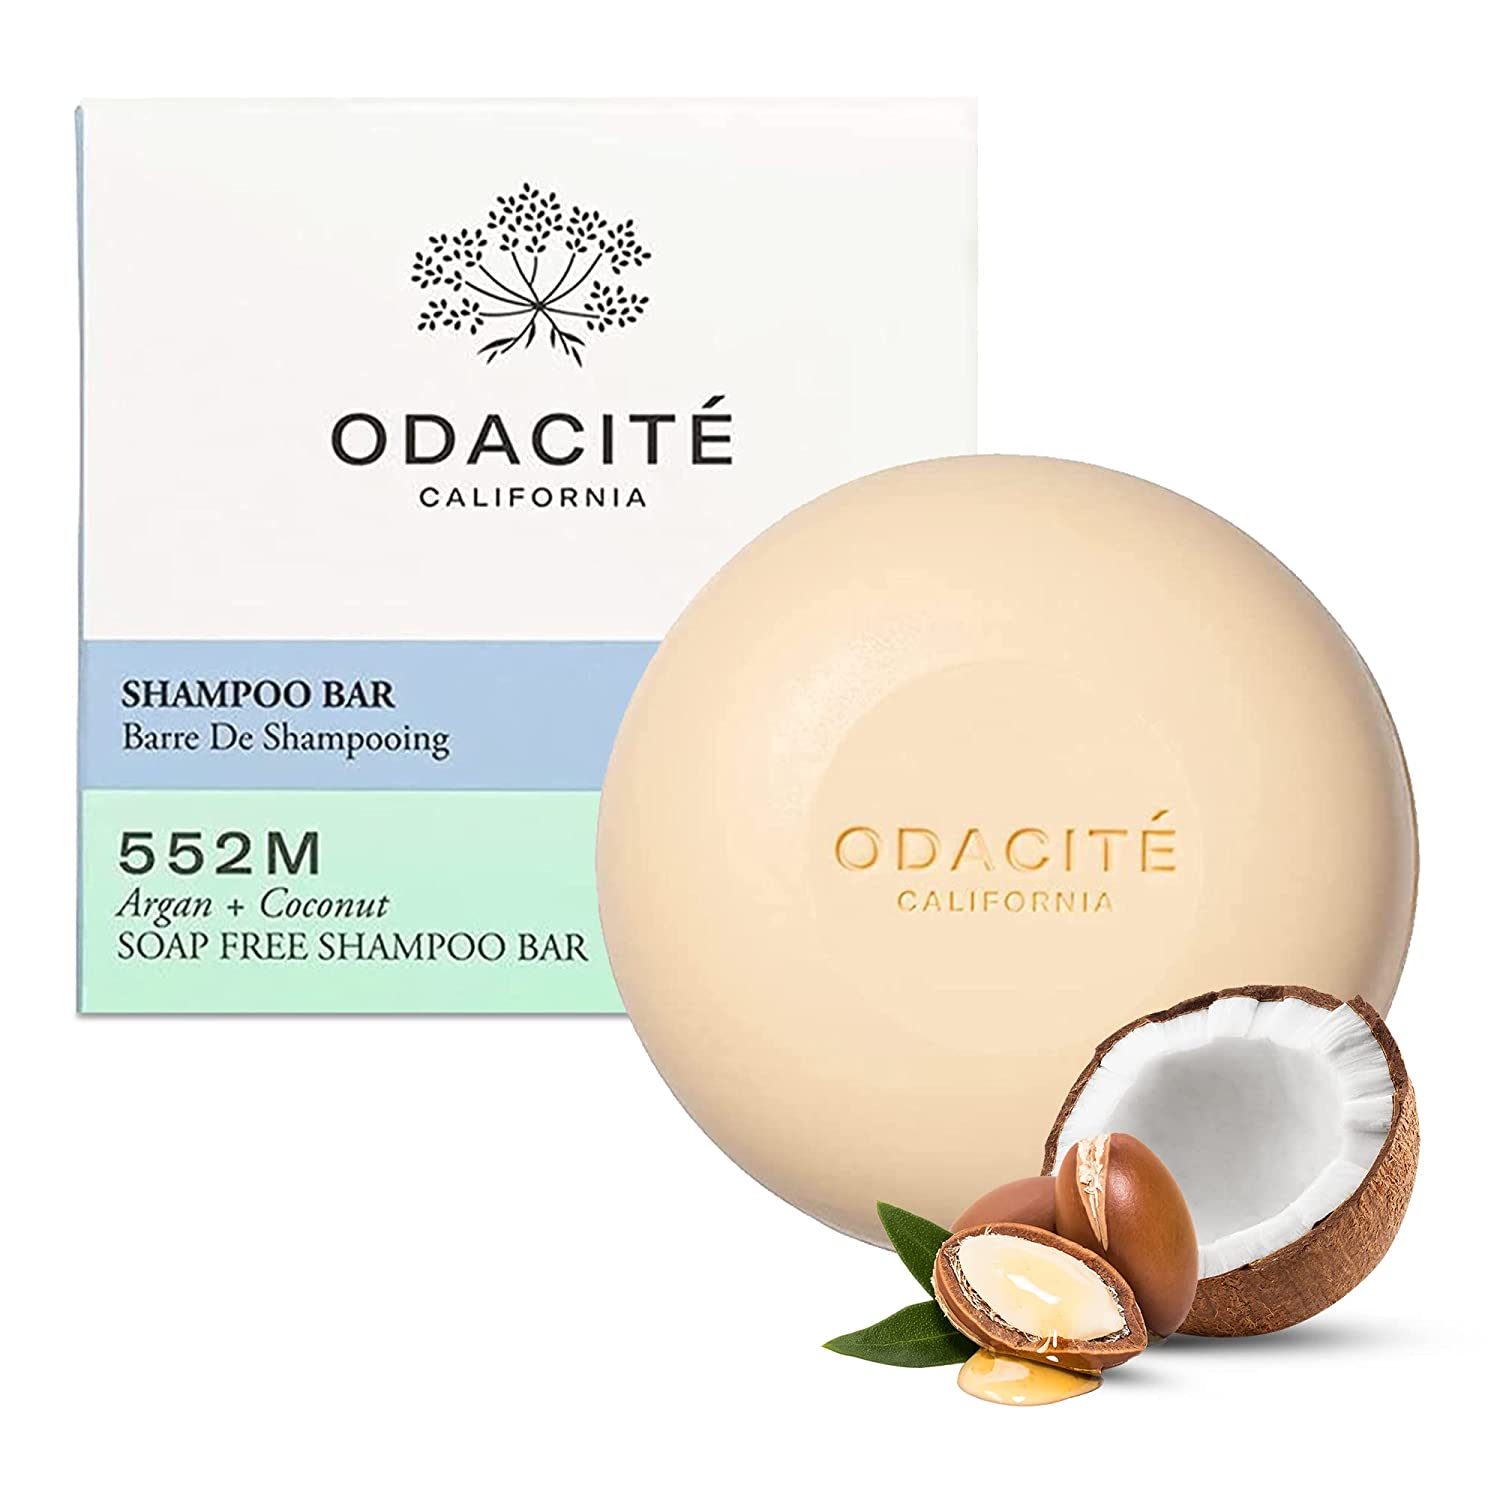 ODACITE 552M Soap Free Shampoo Bar